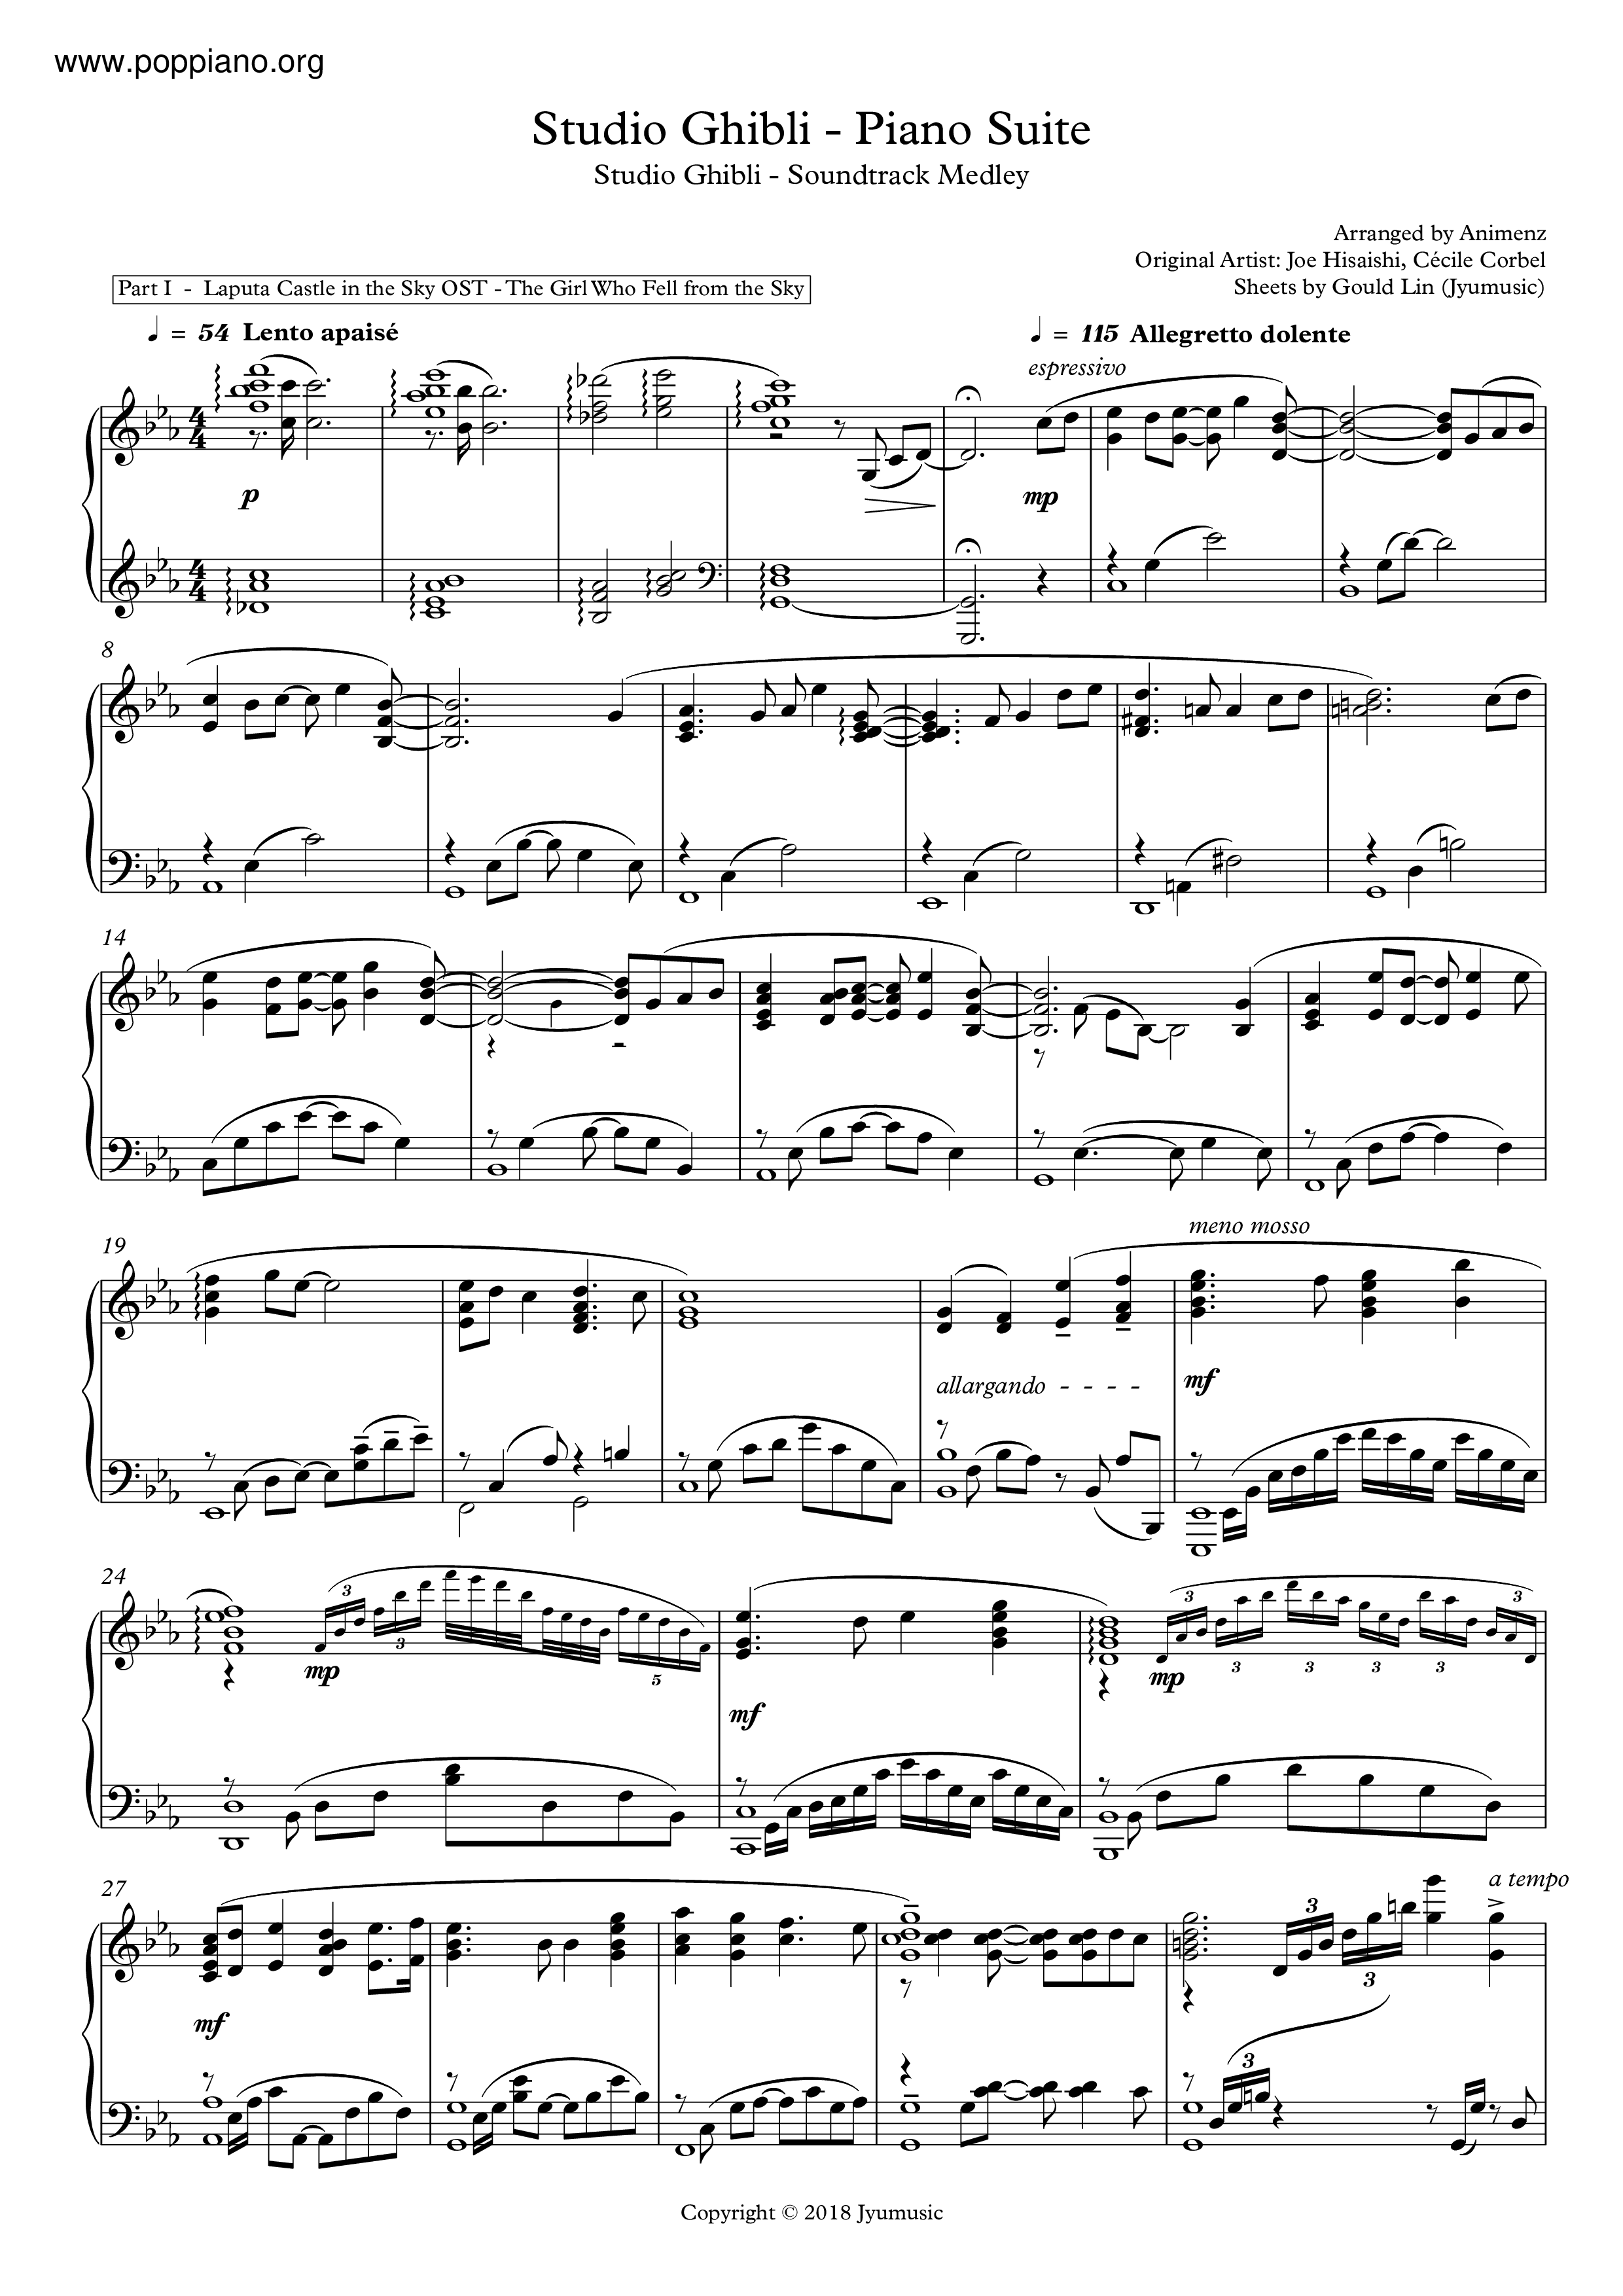 Studio Ghibli - Piano Suite Score